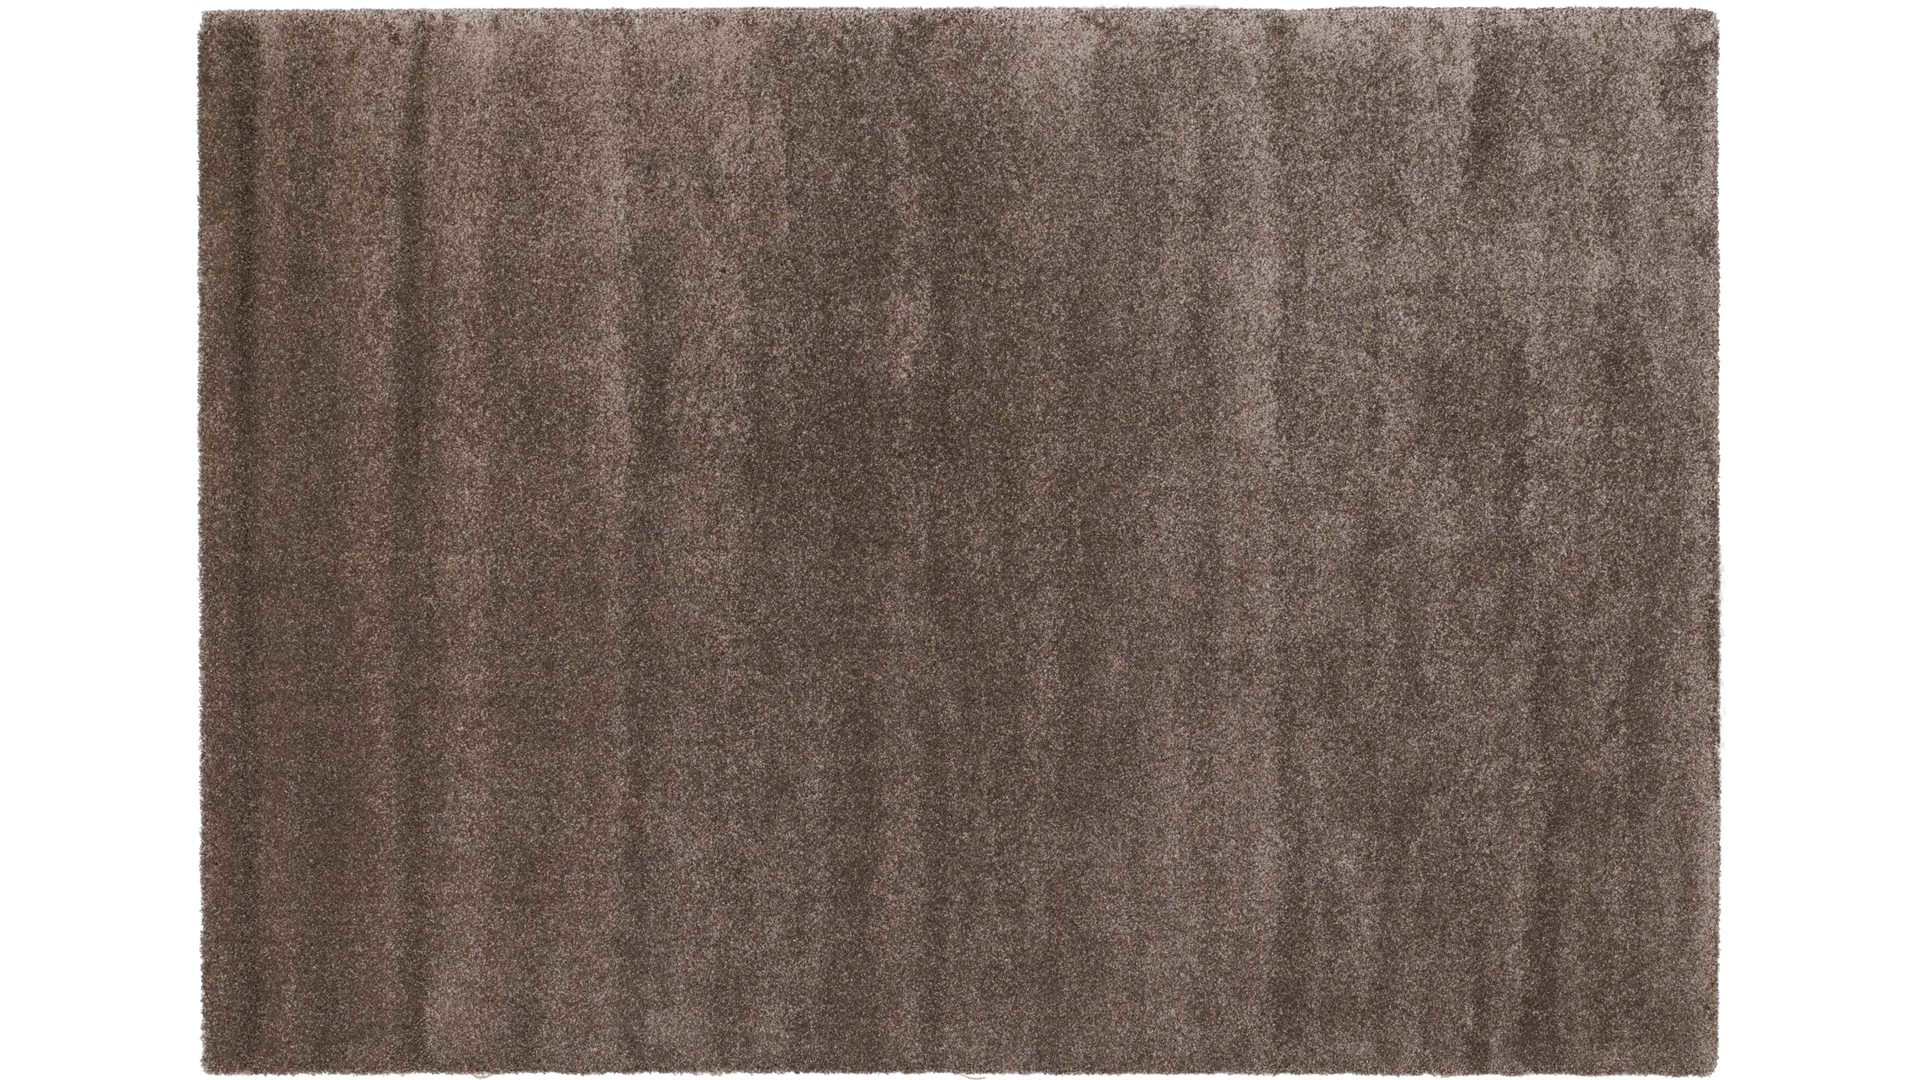 Webteppich Oci aus Kunstfaser in Braun Webteppich Bellevue für Ihre Wohnaccessoires braune Kunstfaser – ca. 65 x 130 cm